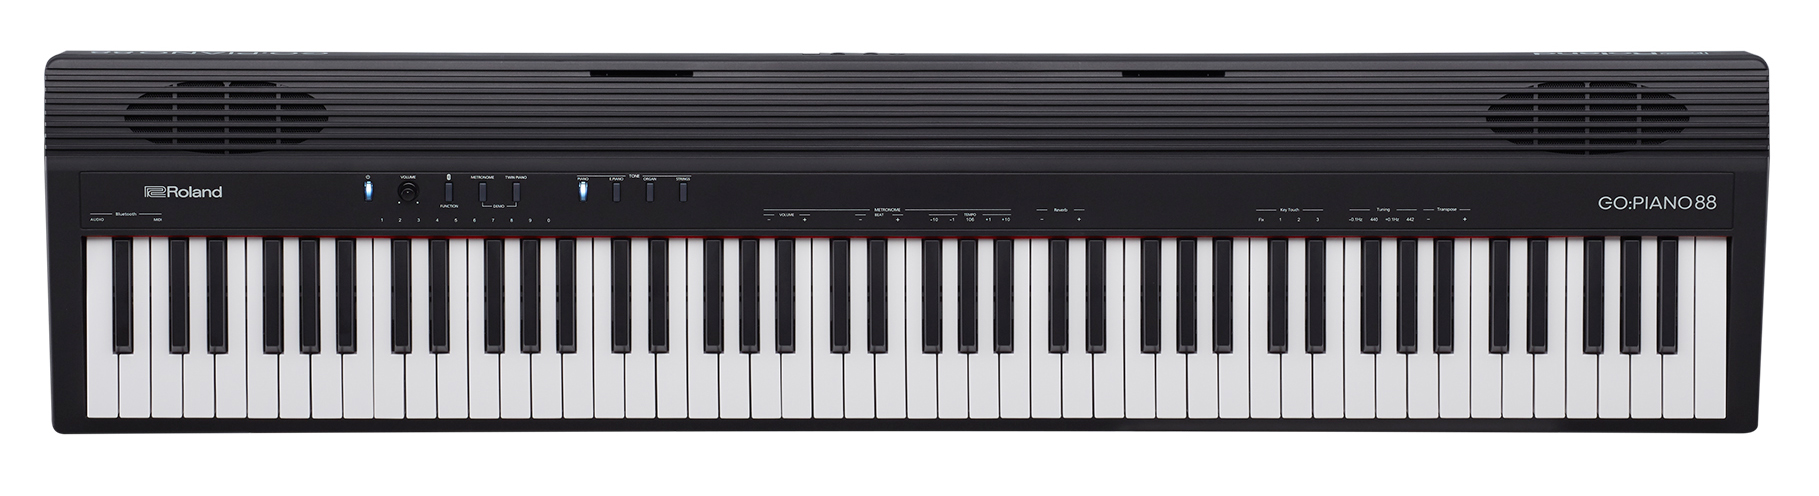 ローランド、軽量設計の88鍵盤電子キーボード「GO:PIANO88」を3月上旬に発売